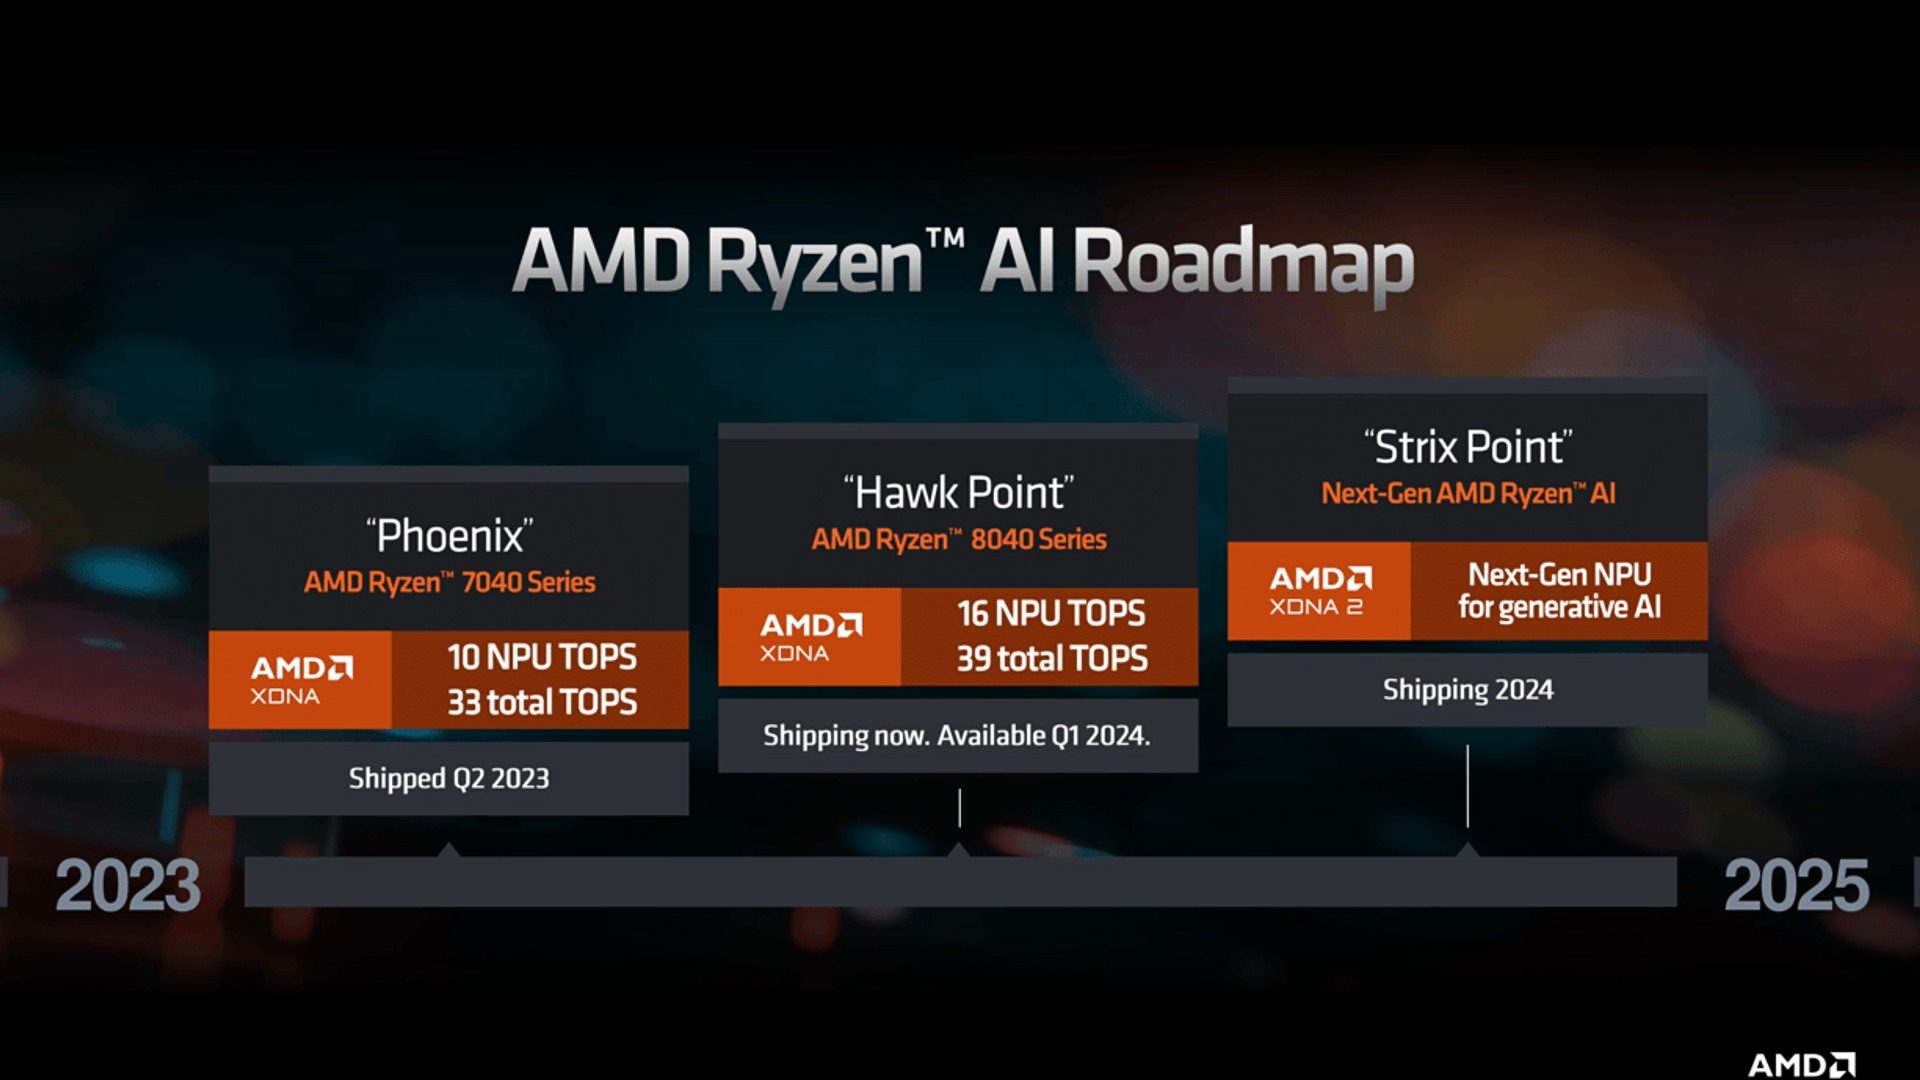 AMD Ryzen 8040 Serie KI-Roadmap